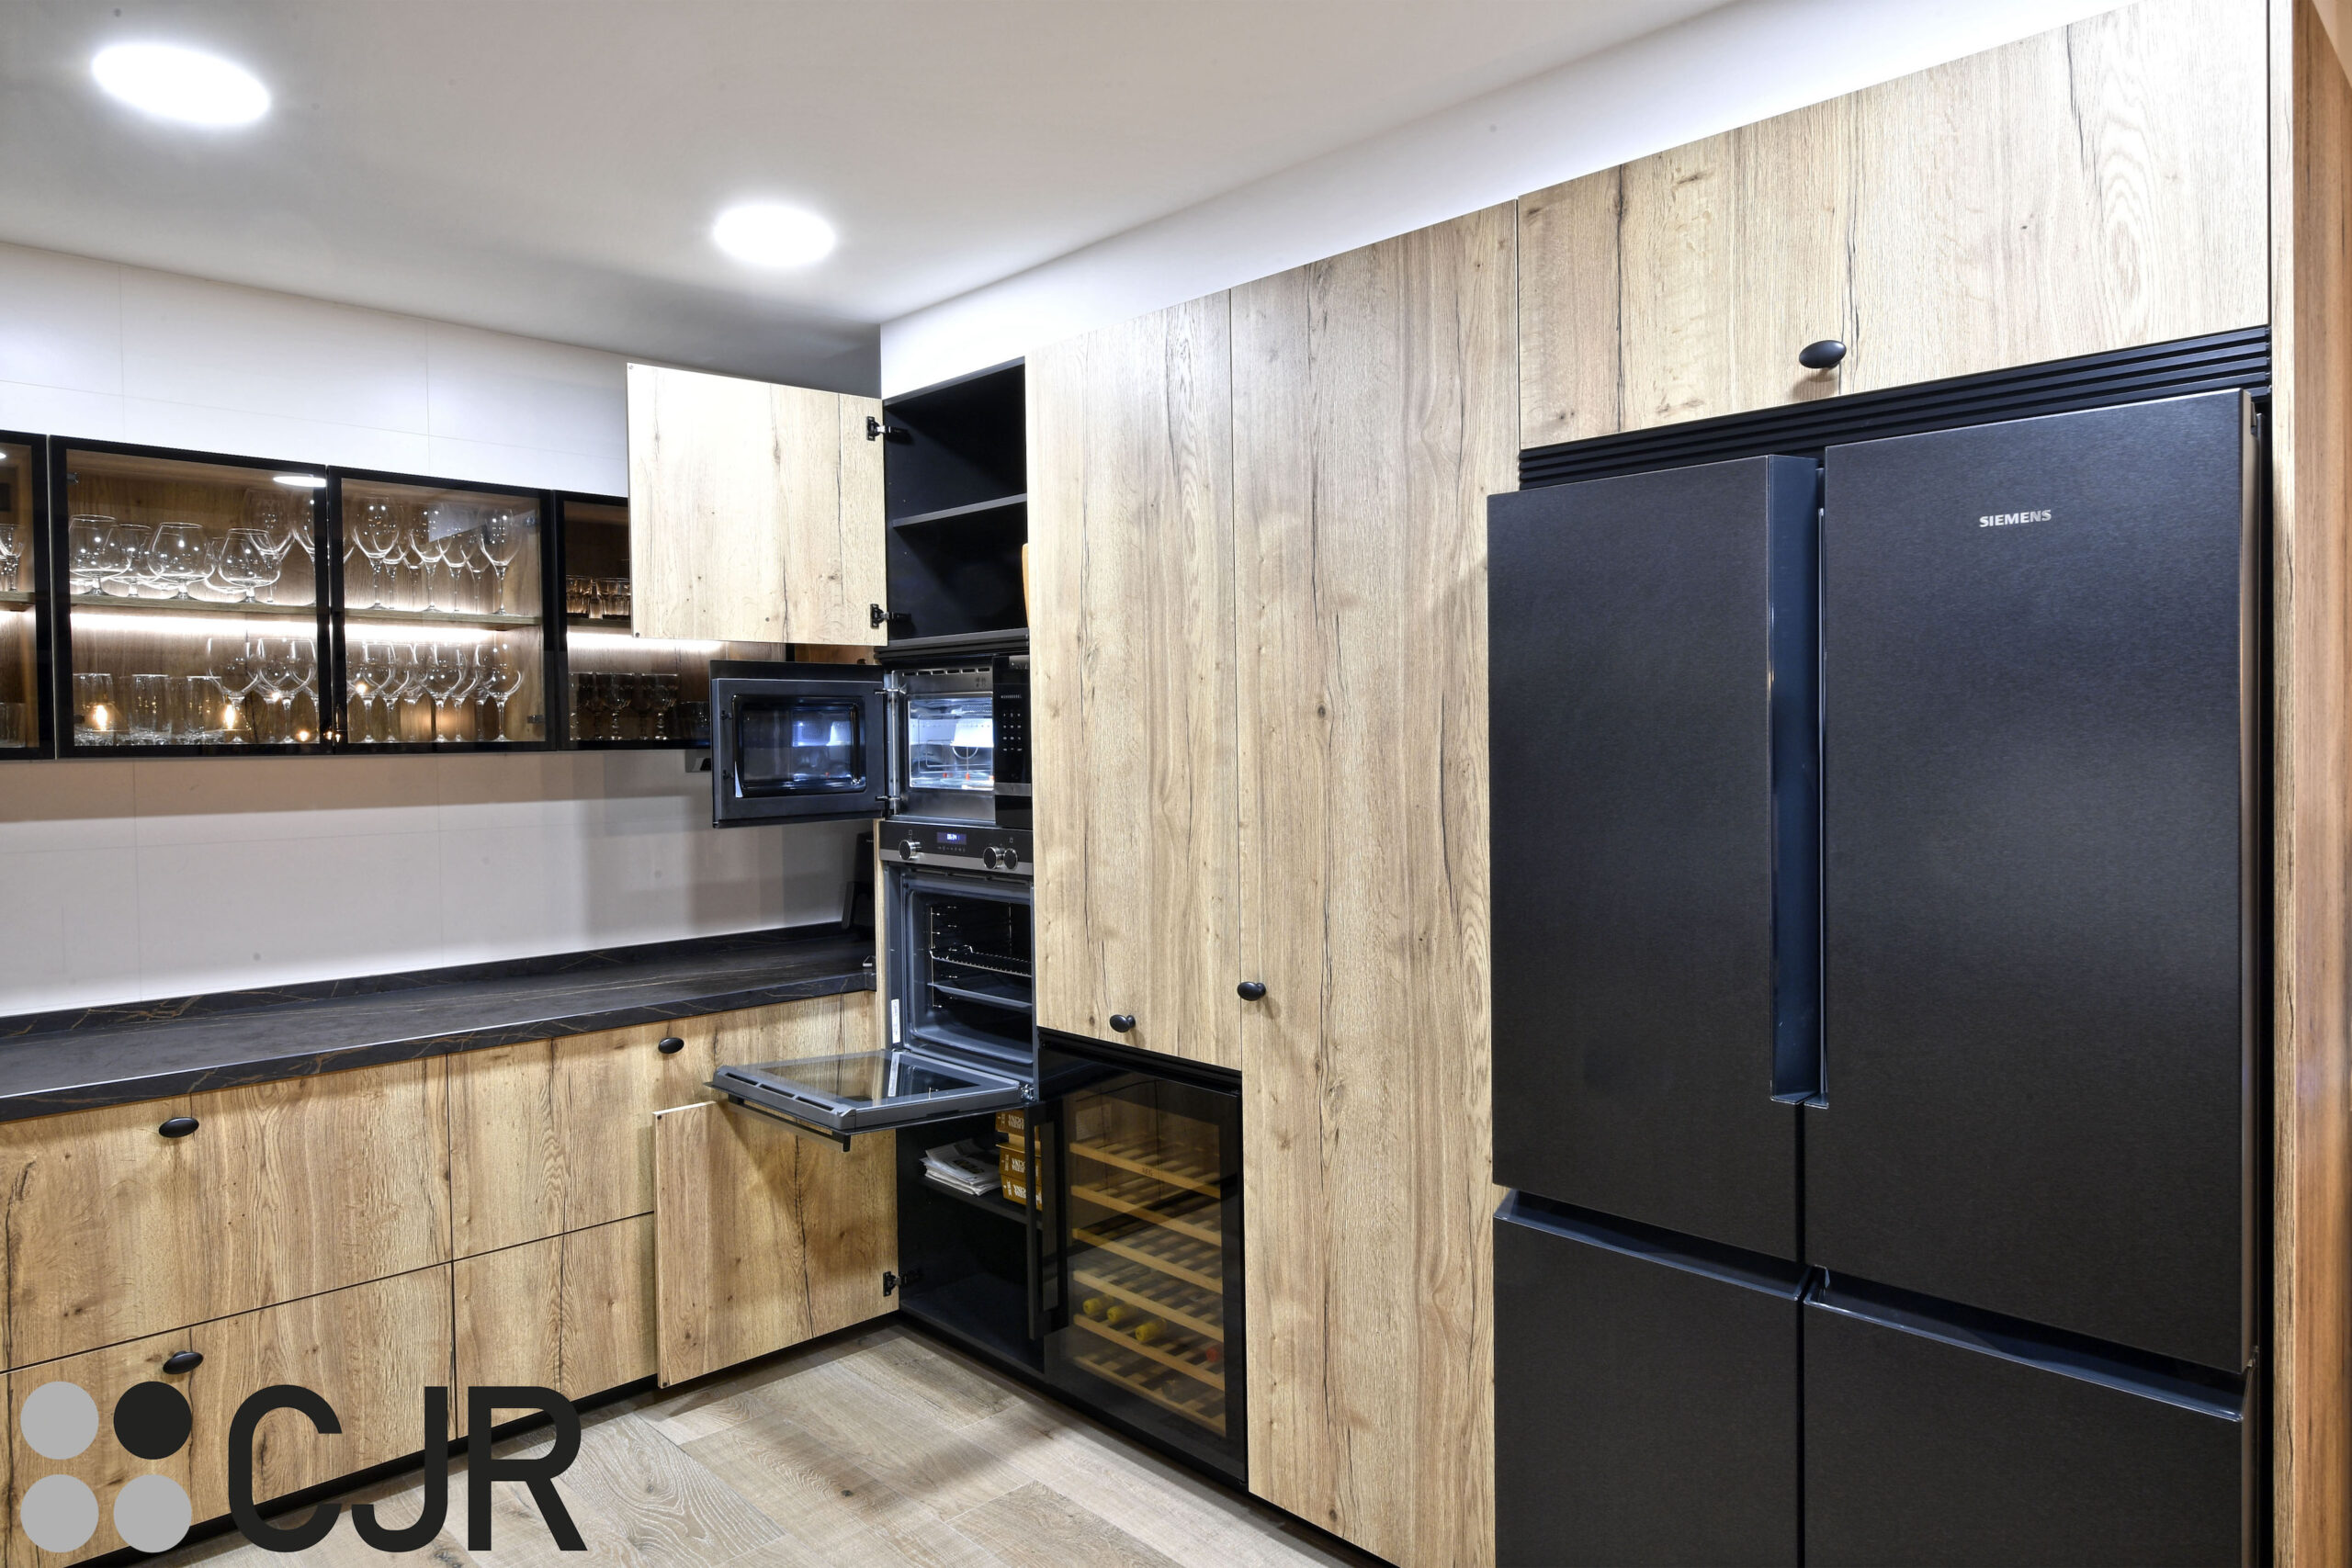 torre de horno y microondas en negro con muebles de cocina en madera cocinas cjr